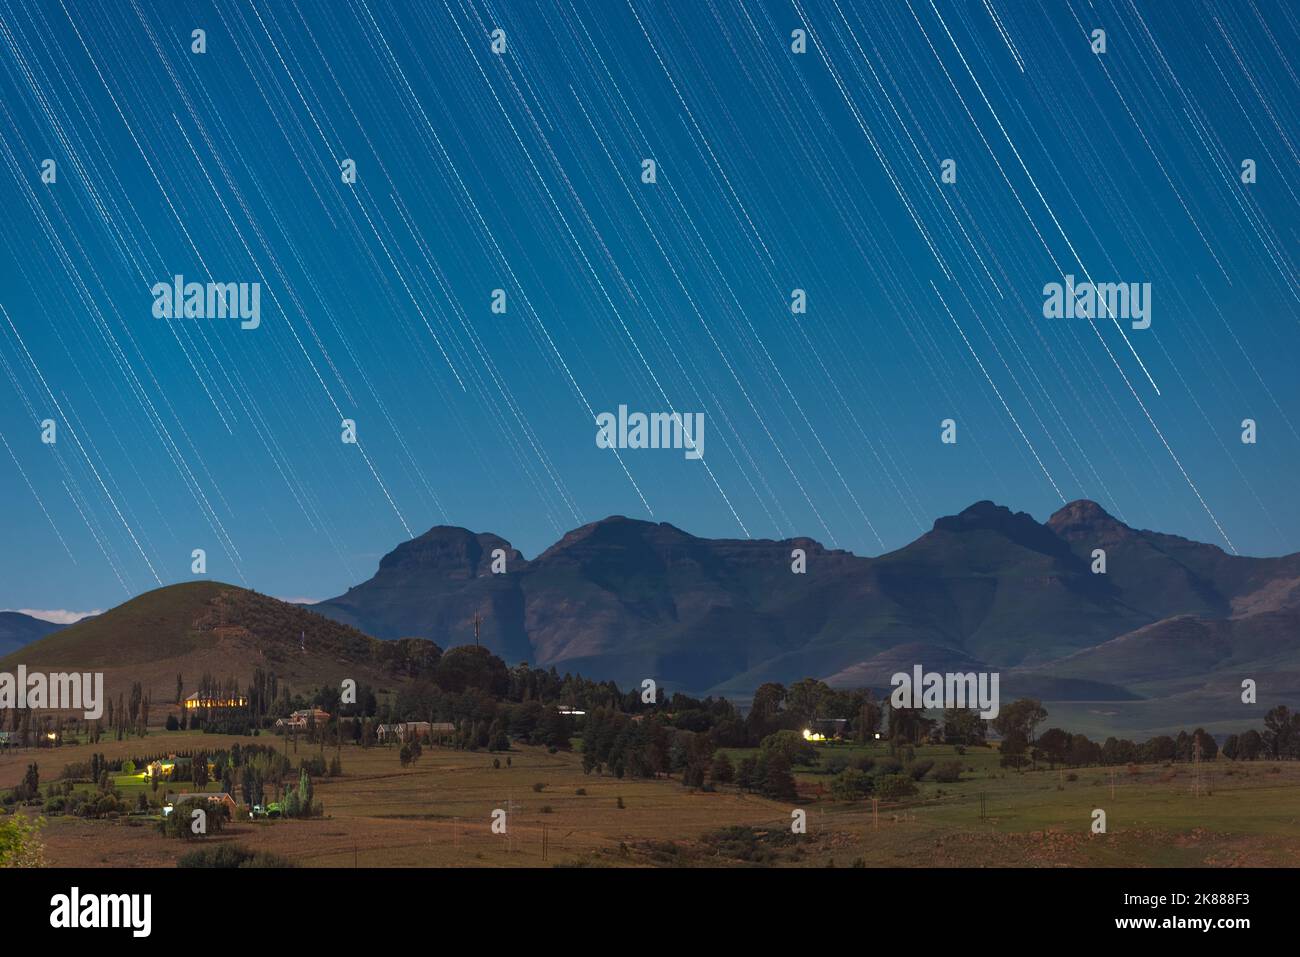 Pistes étoiles au-dessus des montagnes dans la ville de Clarens, Afrique du Sud. Cette destination touristique populaire se trouve à proximité du parc national des Golden Gate Highlands Banque D'Images